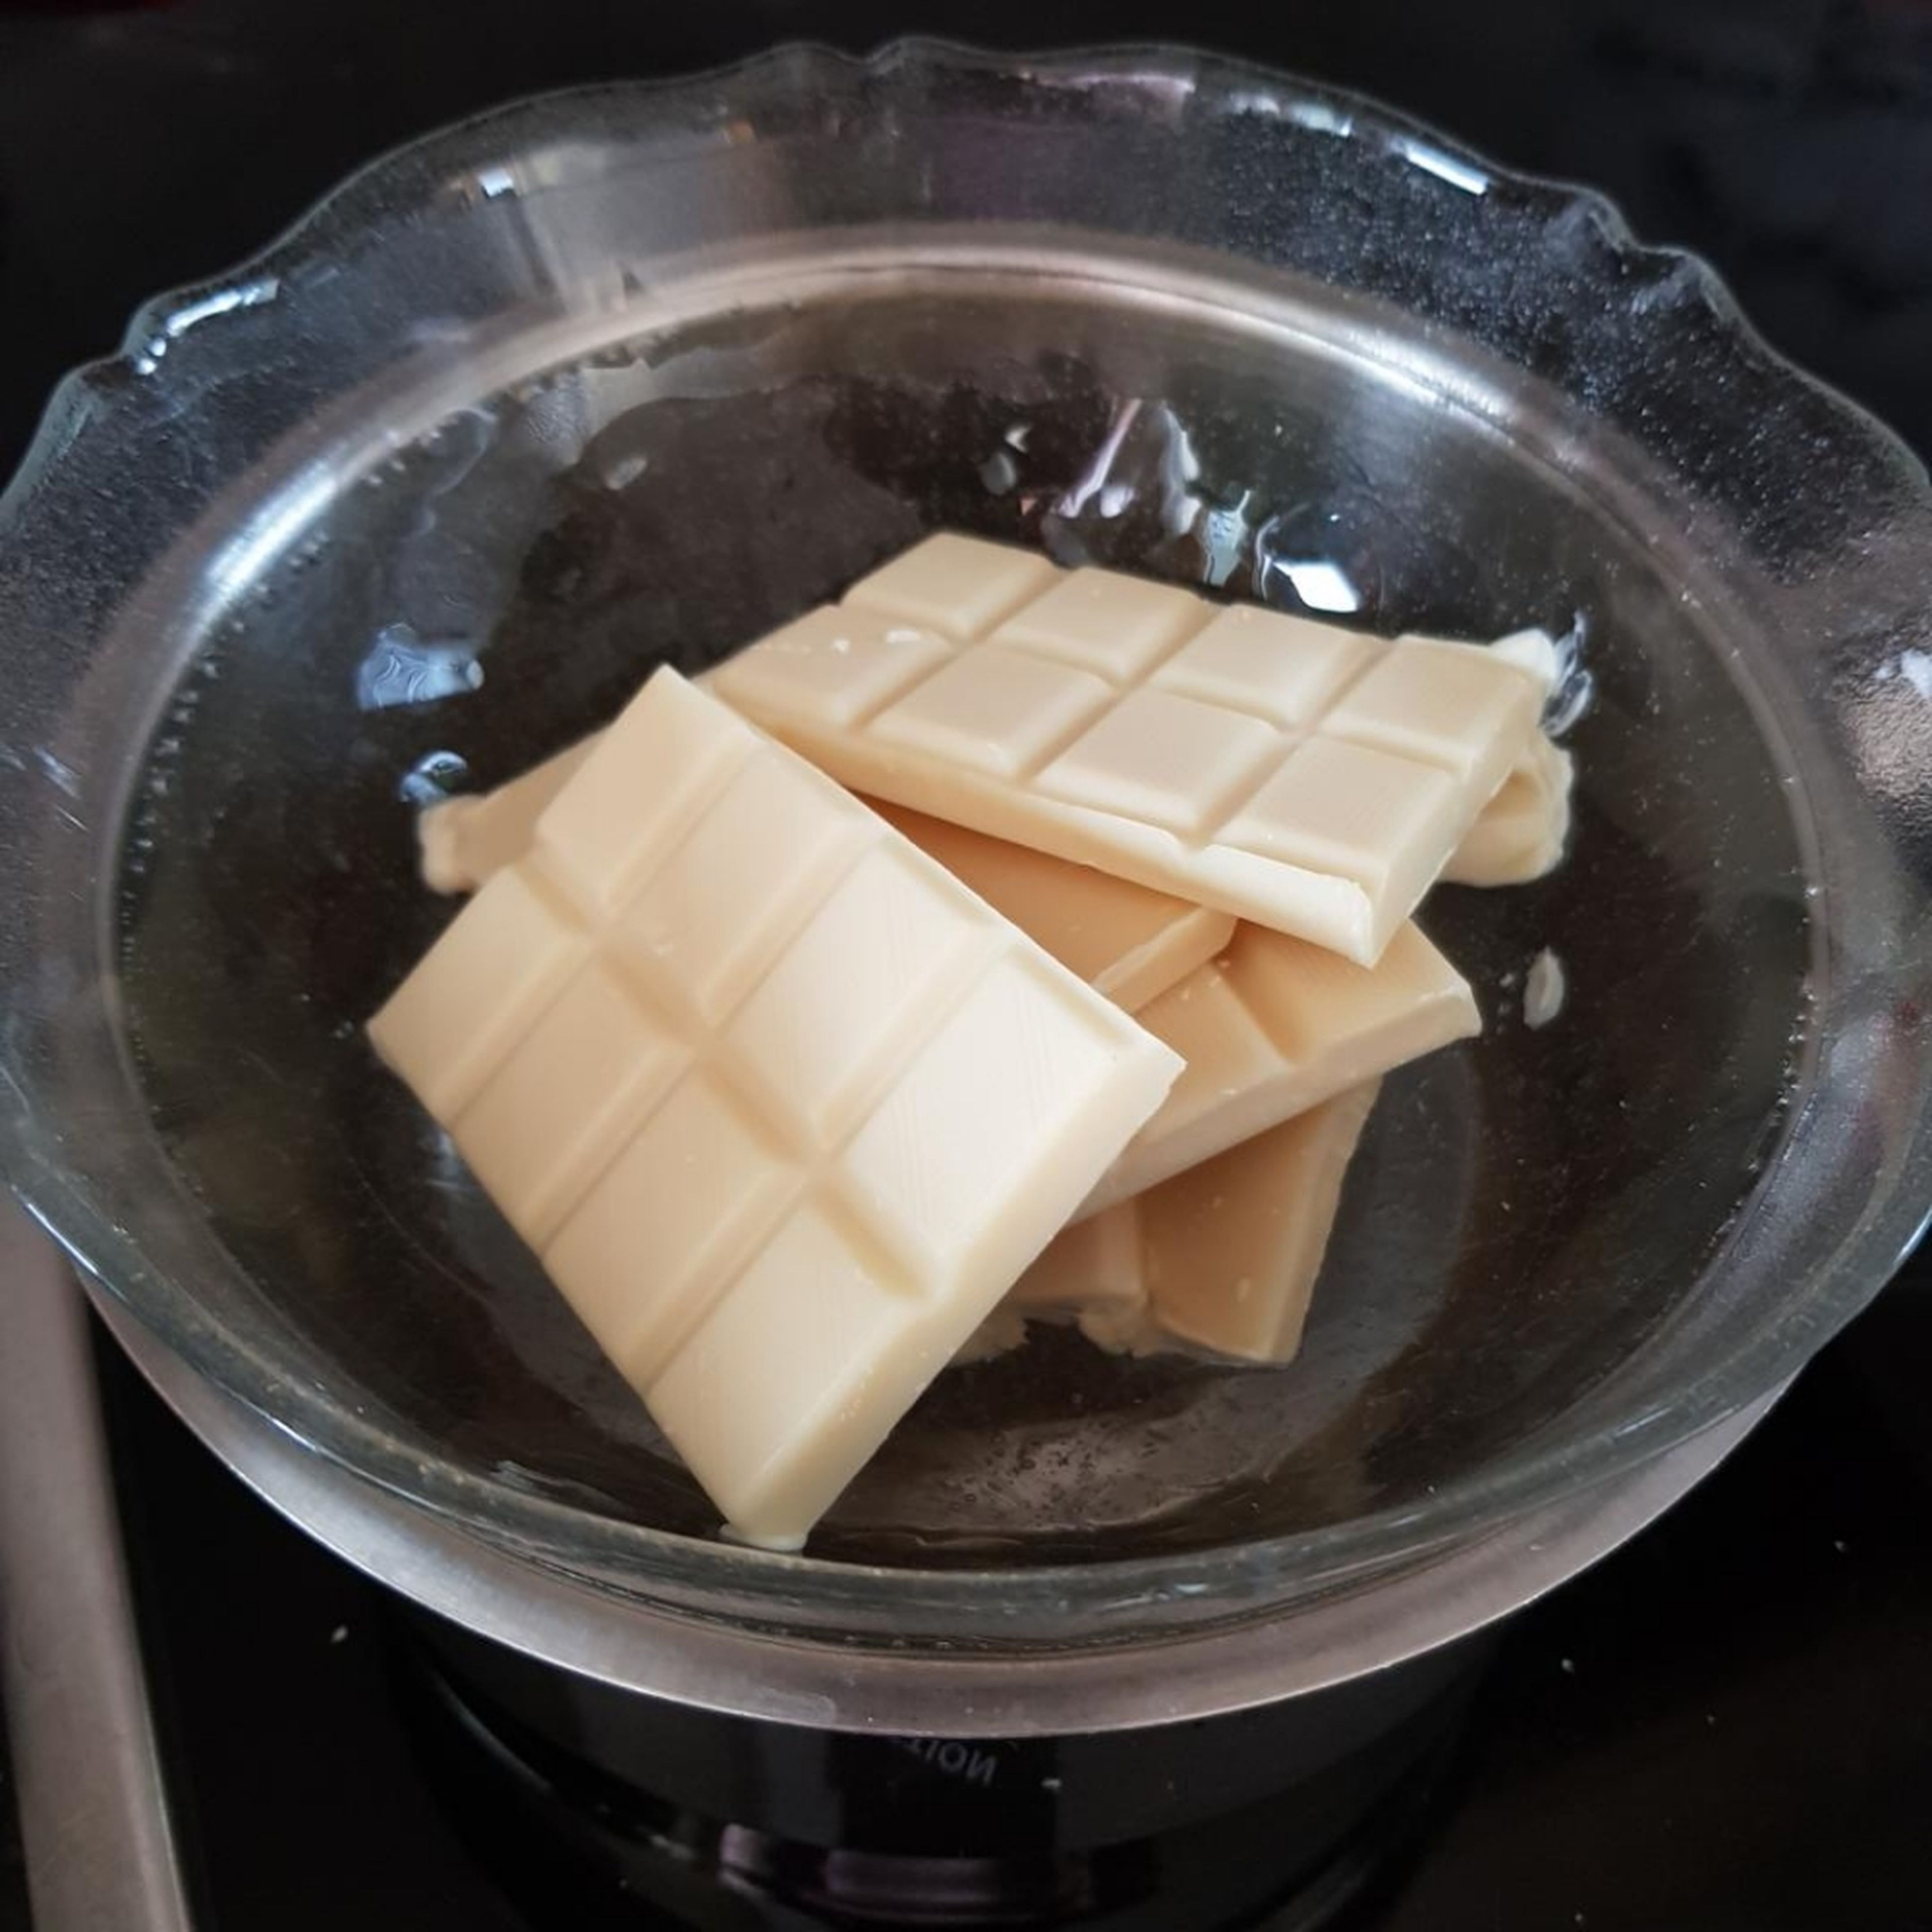 Schokolade mit dem Butter schmelzen... achte darauf das es nicht zu heiss ist! danach Vanillezucker hinzufügen